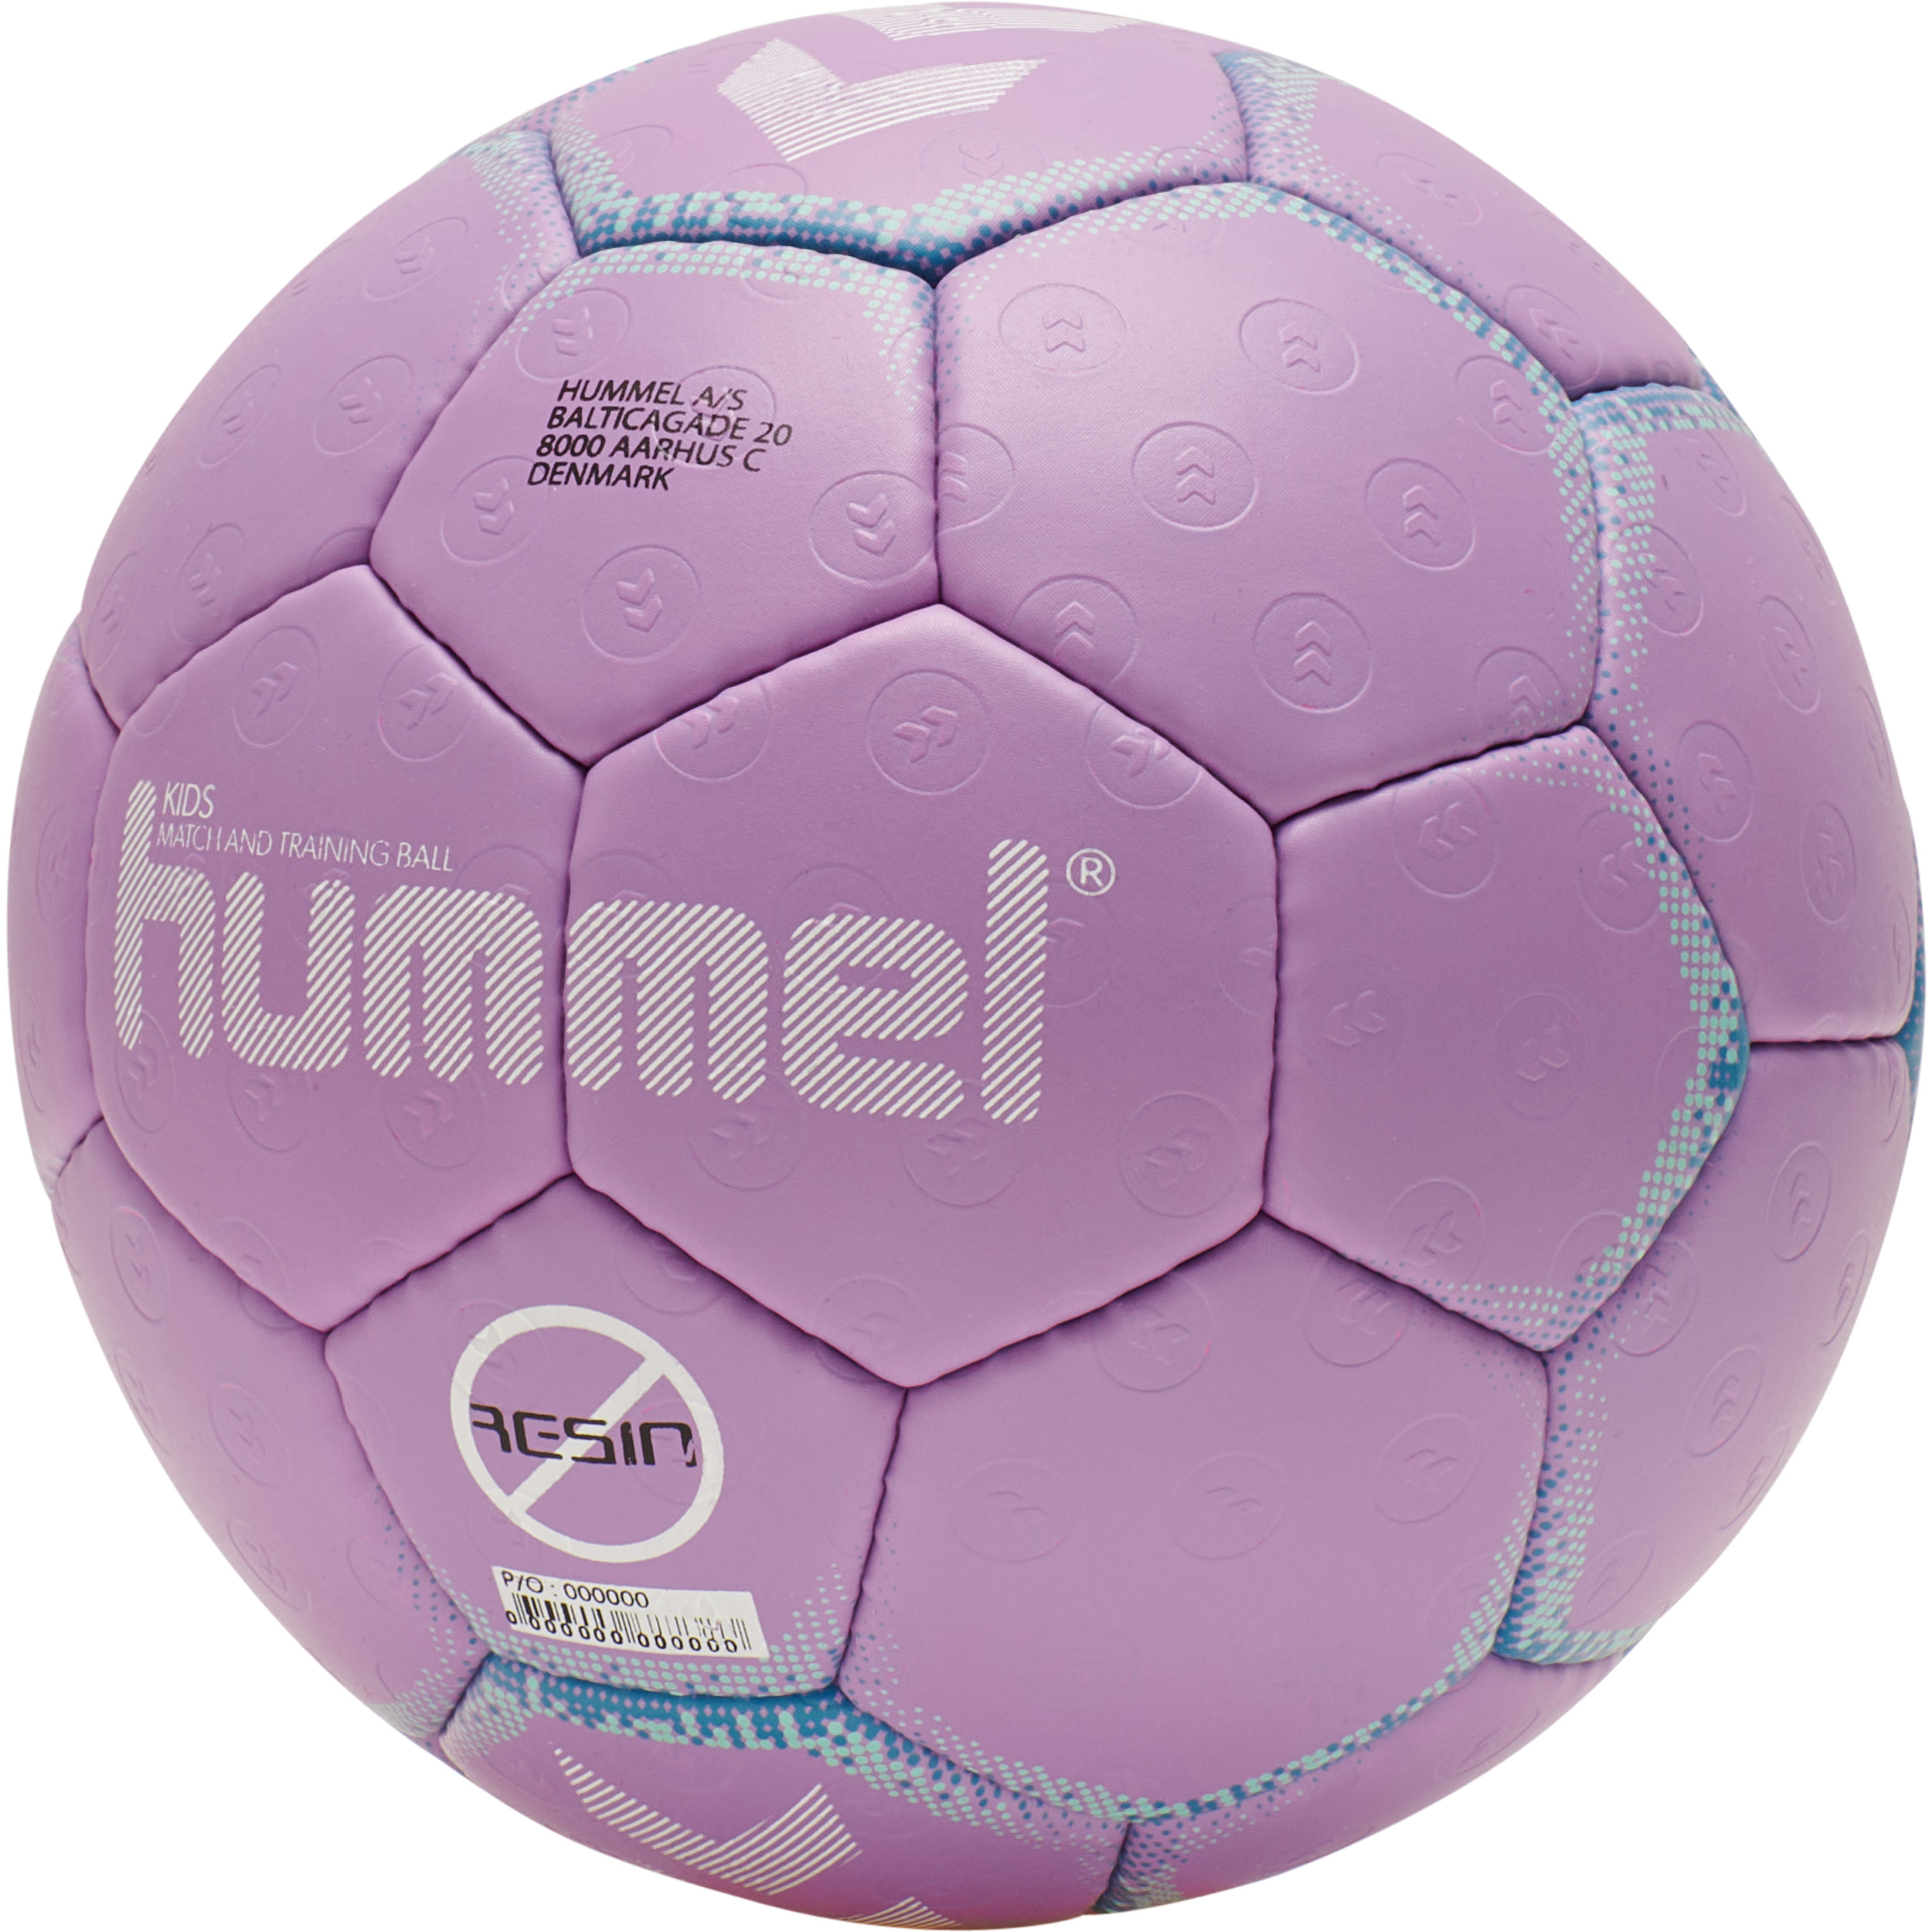 Handball Hummel Kids